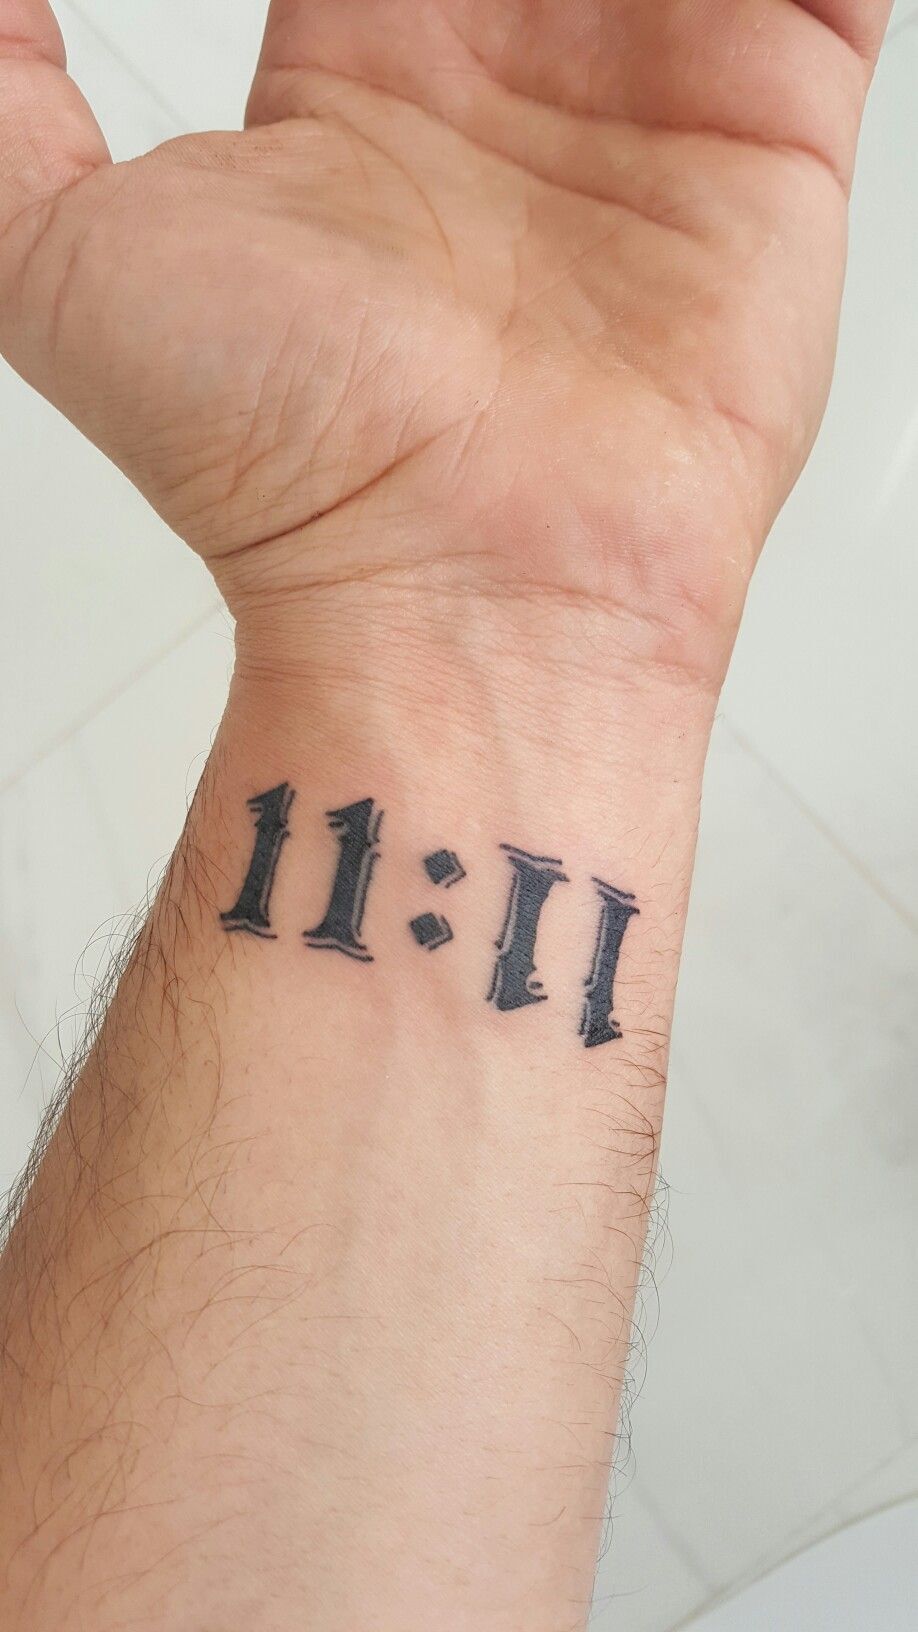 Wrist 1111 Tattoo